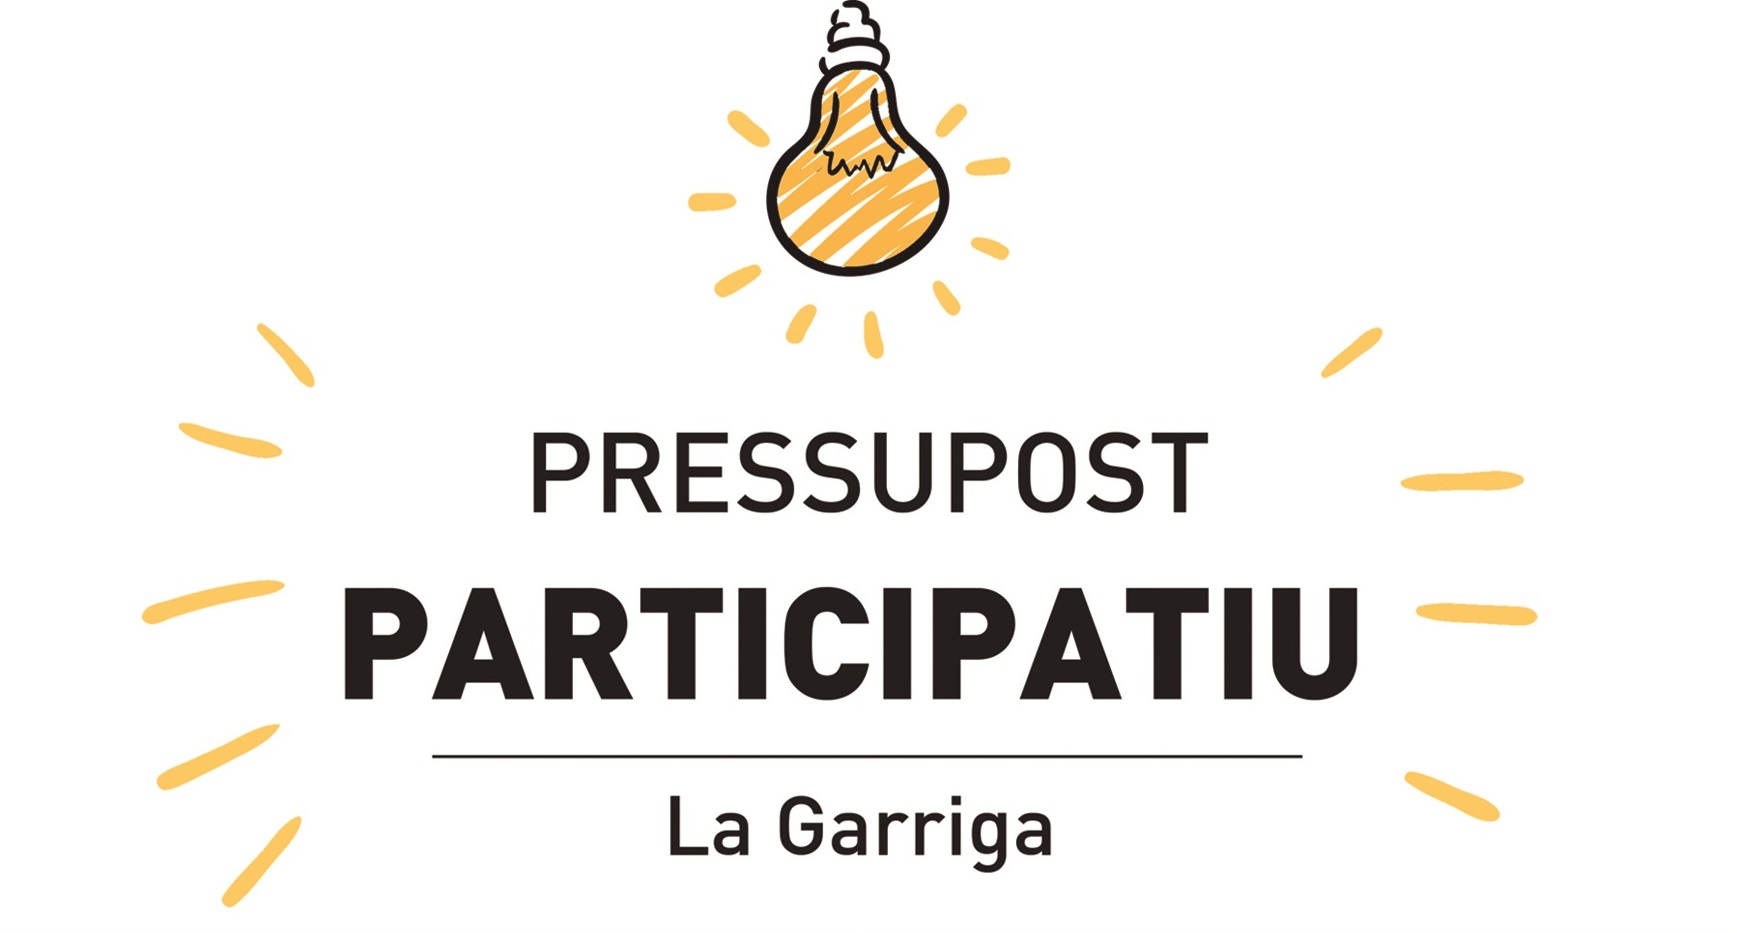 El procés de pressupost participatiu, a debat